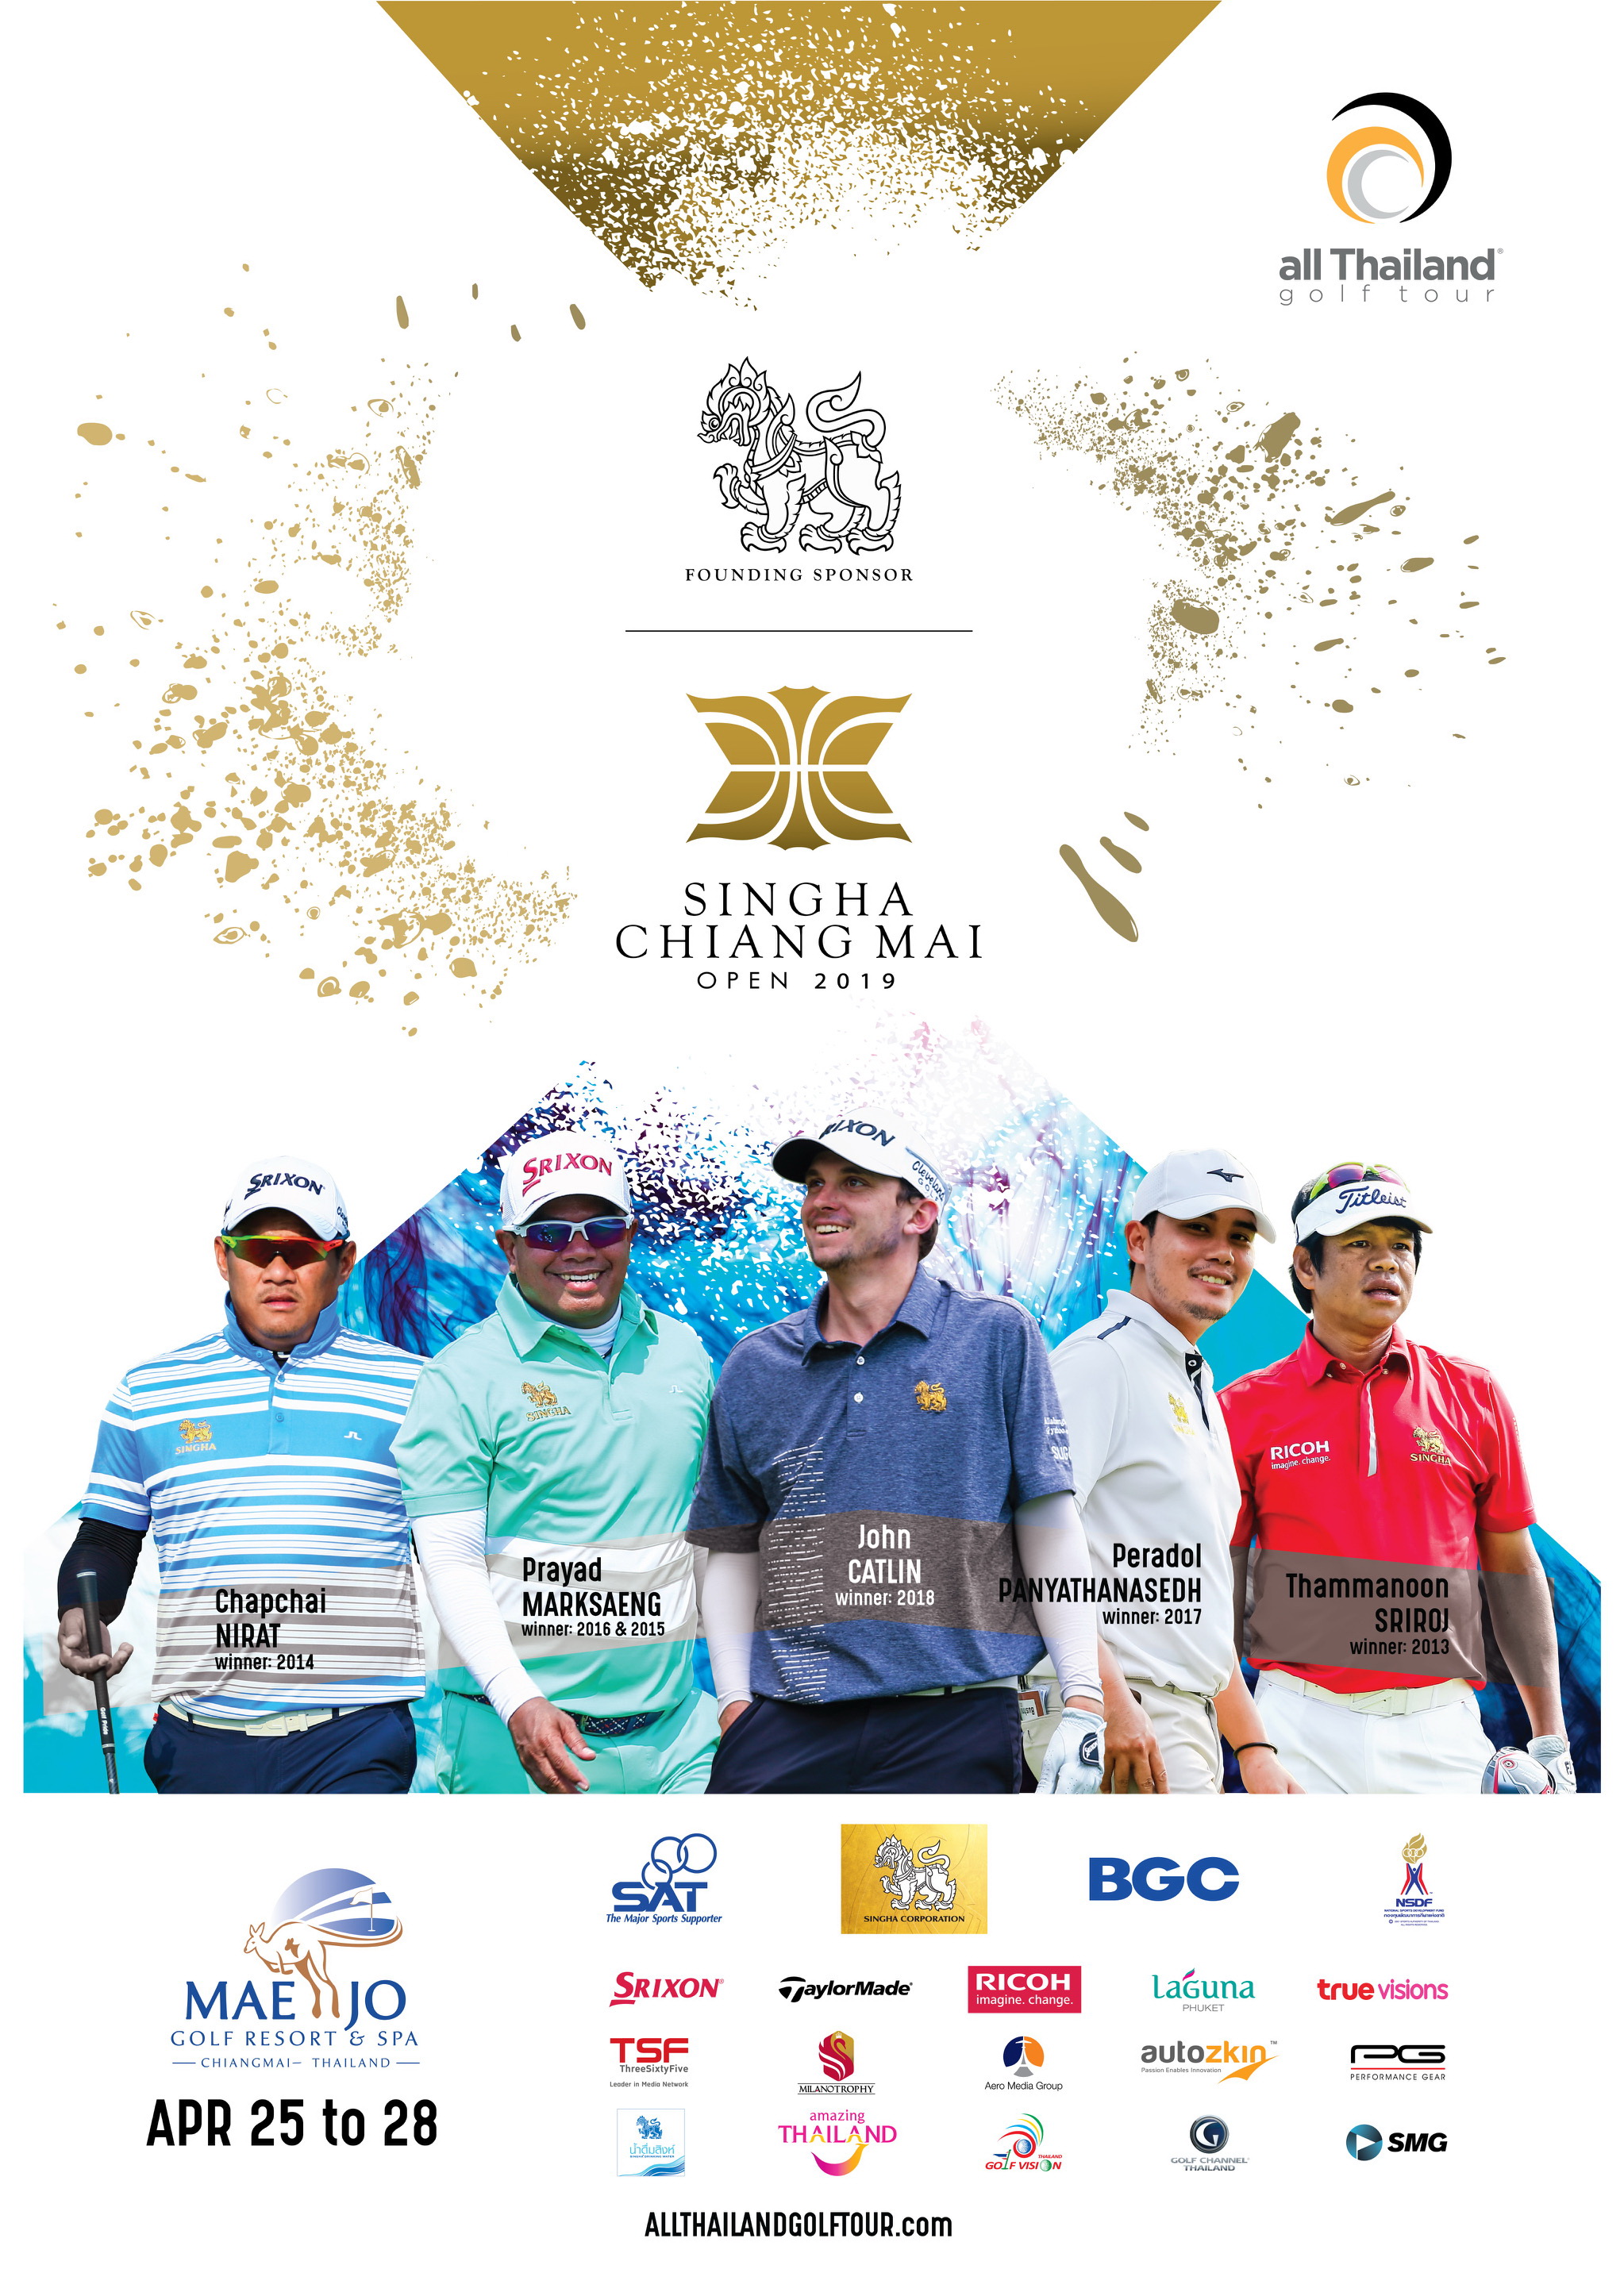 ขอเชิญชมการแข่งขันกอล์ฟรายการ Singha Chiang Mai Open 2019